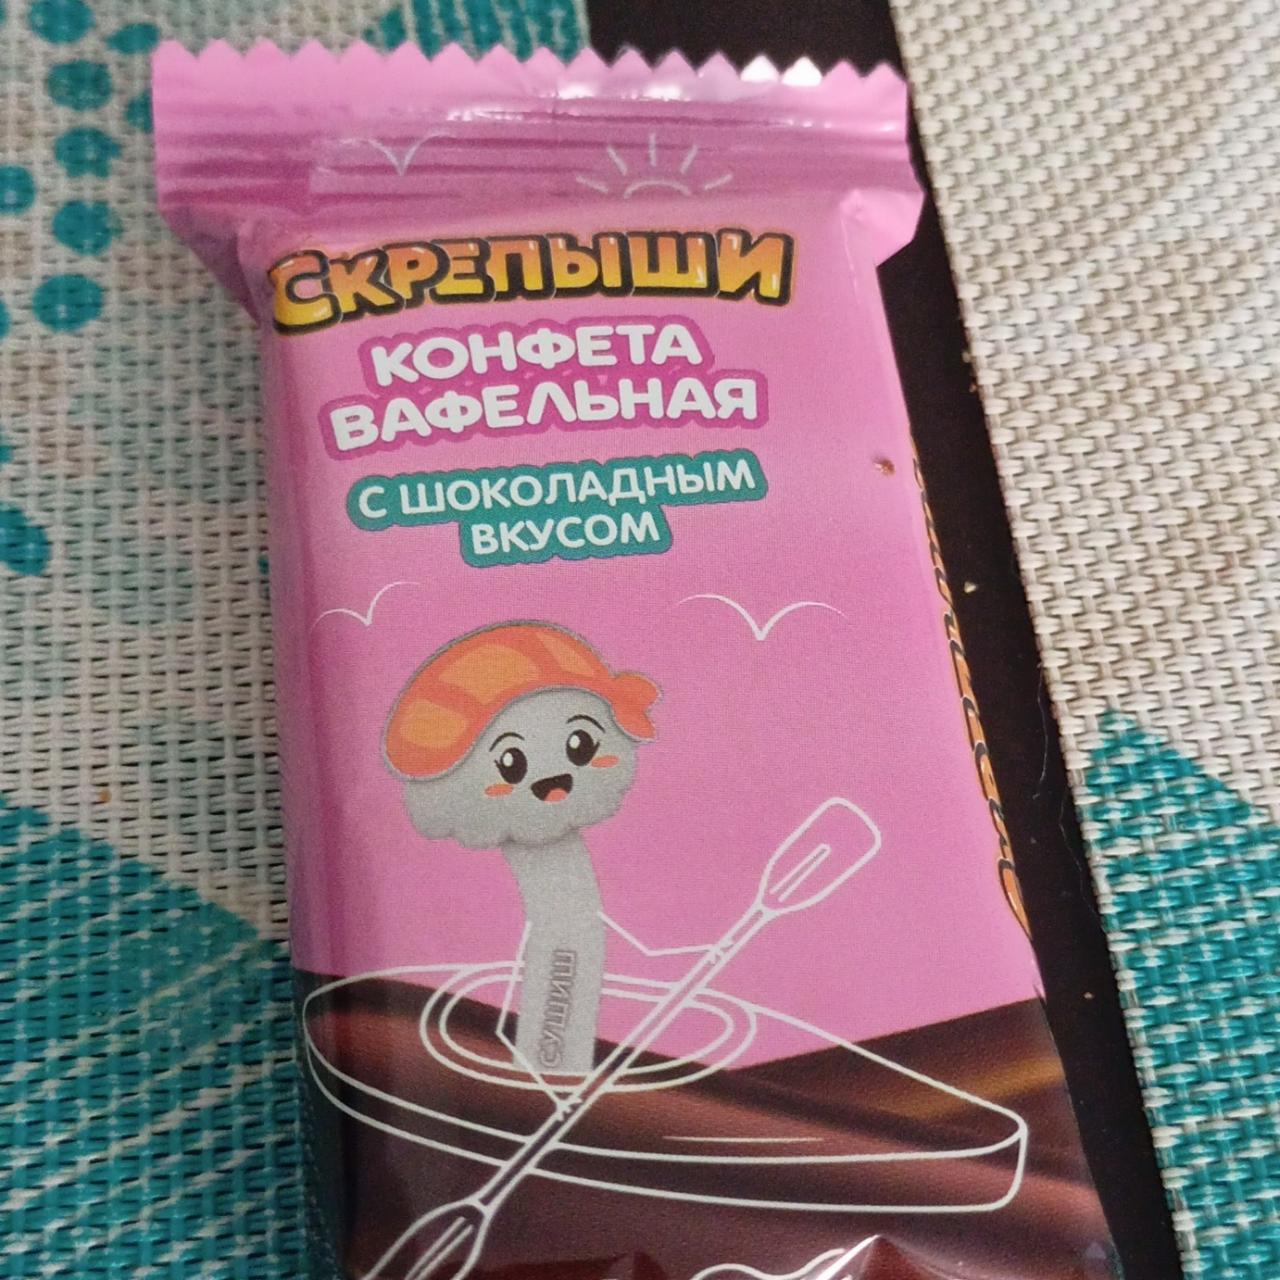 Фото - вафельные конфеты шоколадные Скрепыши